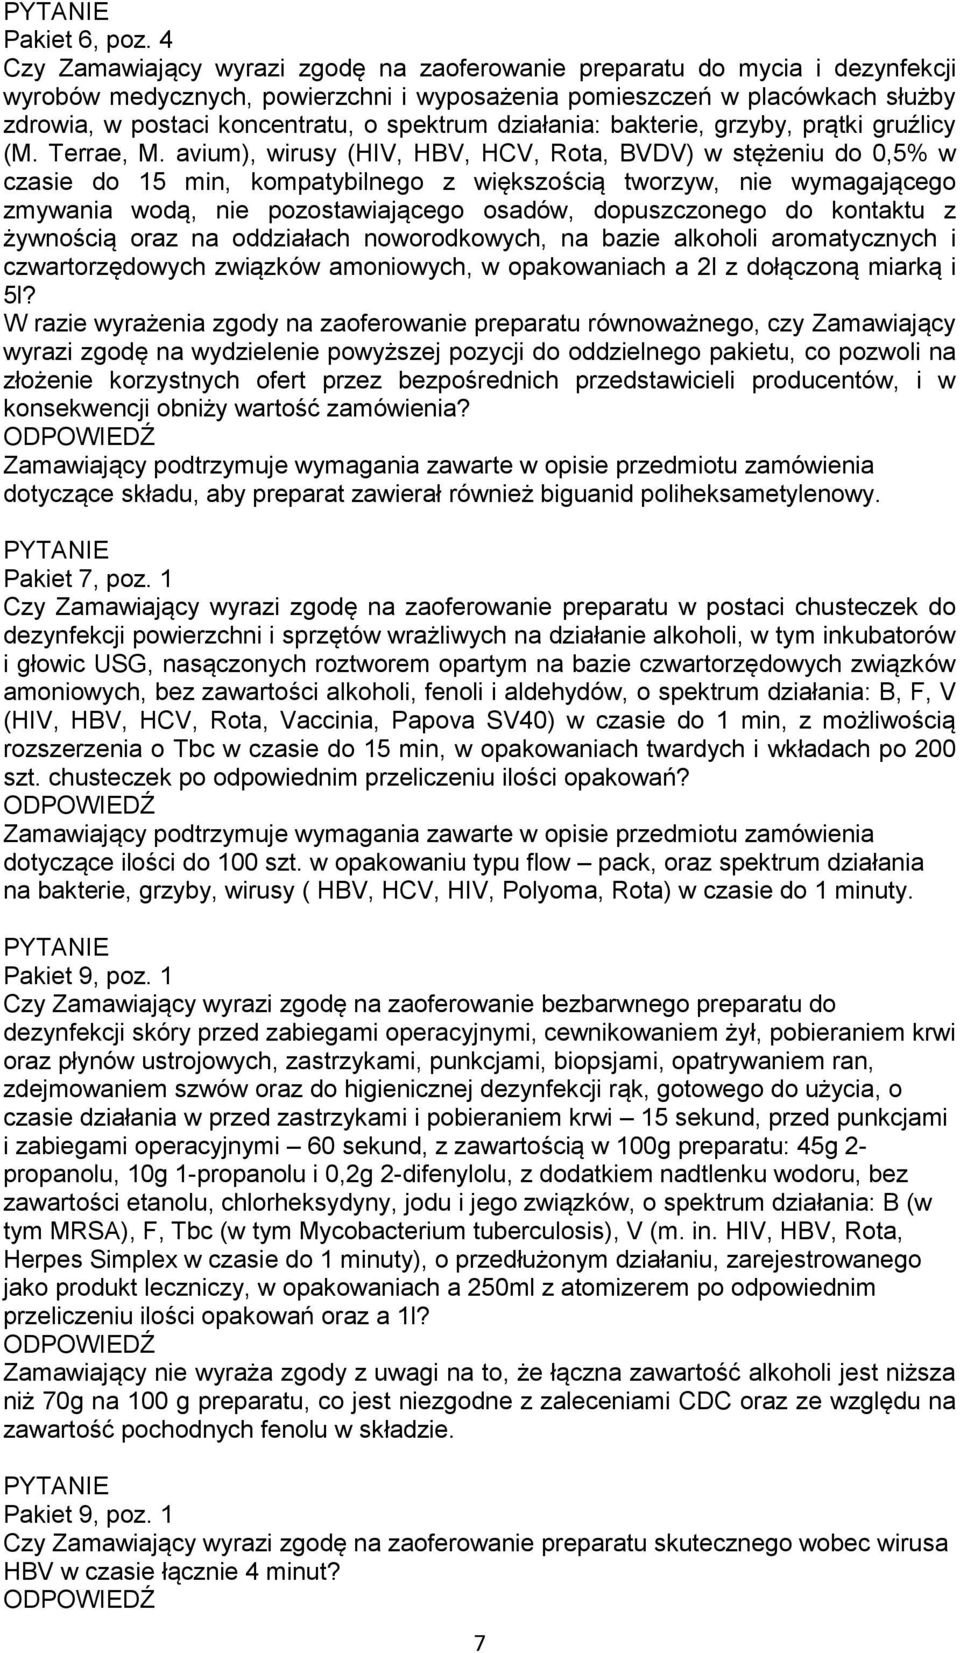 spektrum działania: bakterie, grzyby, prątki gruźlicy (M. Terrae, M.